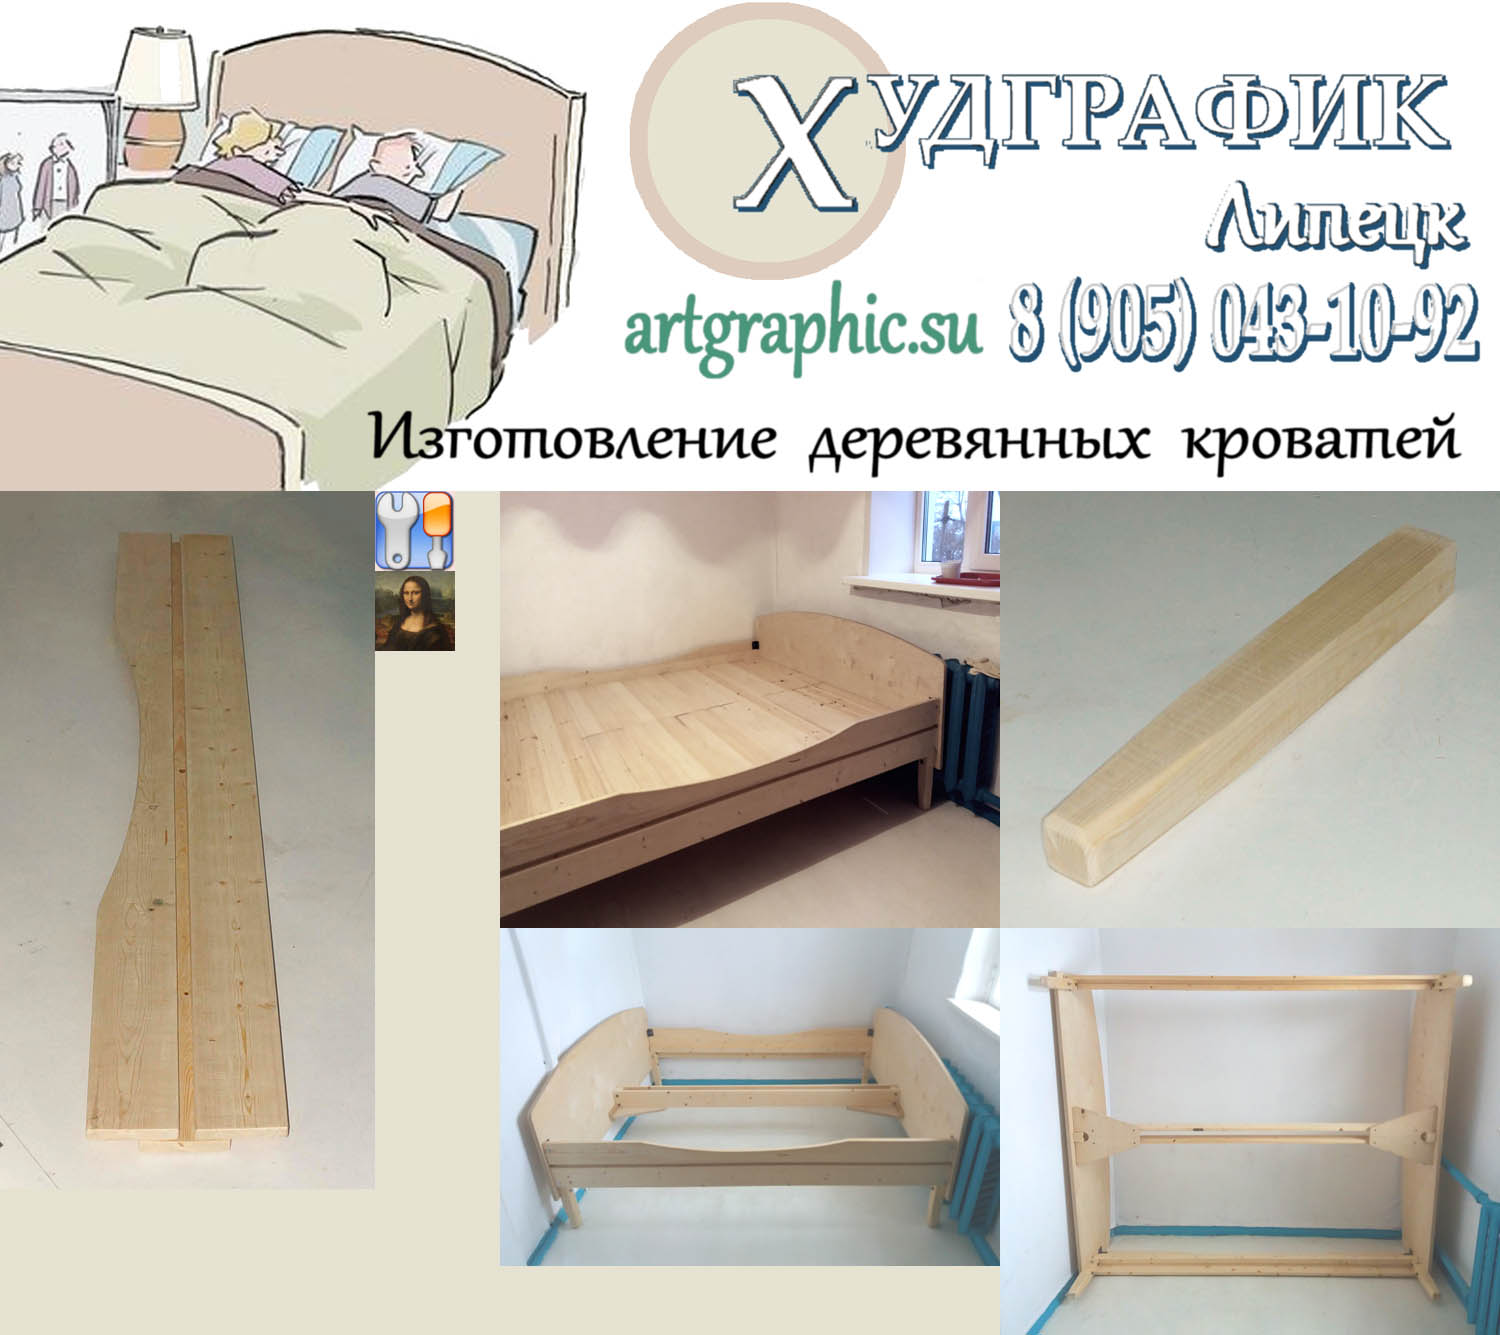  Изготовление деревянной кровати в Липецке на заказ по размерам